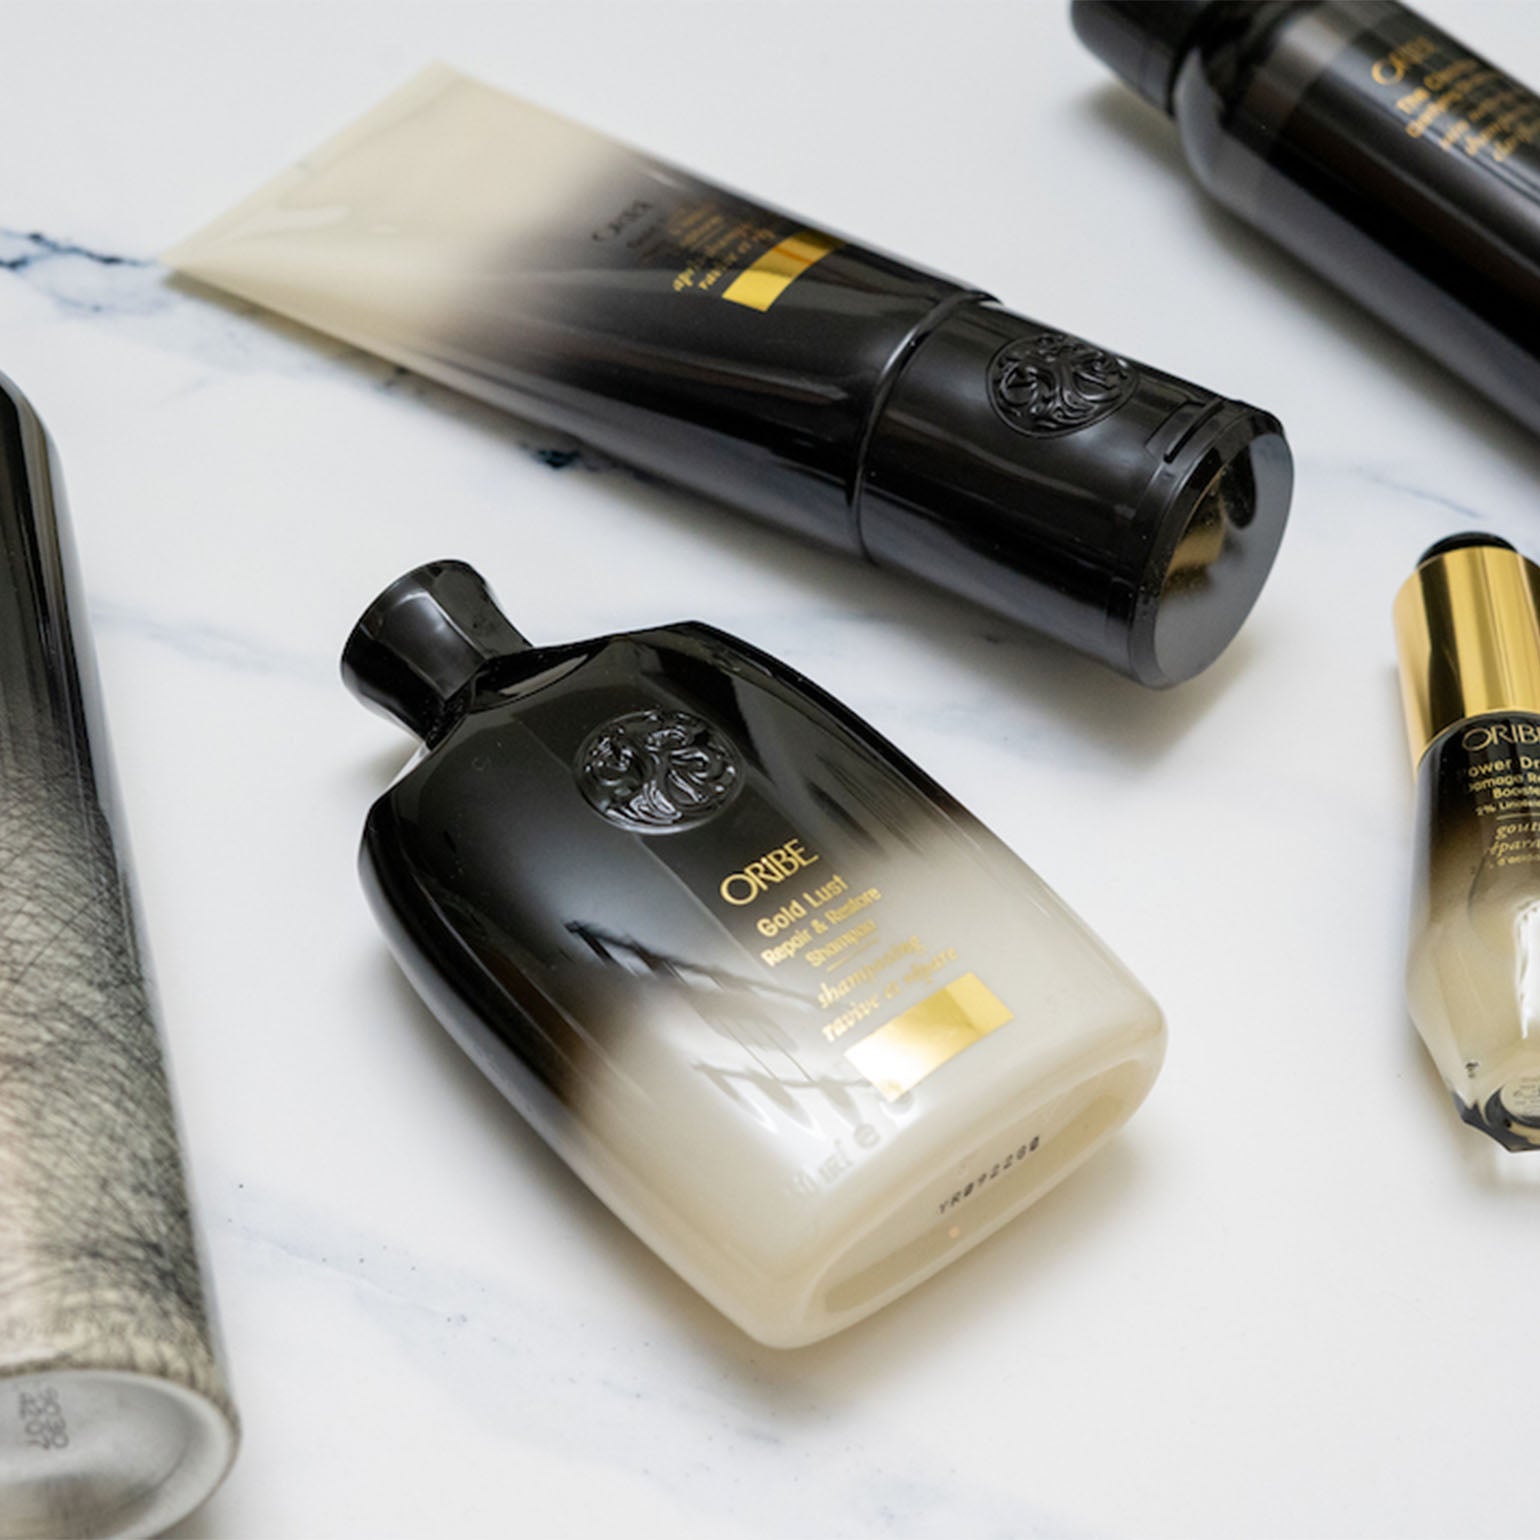 Oribe. Shampoing Ravive et Répare Gold Lust - 75 ml - Concept C. Shop